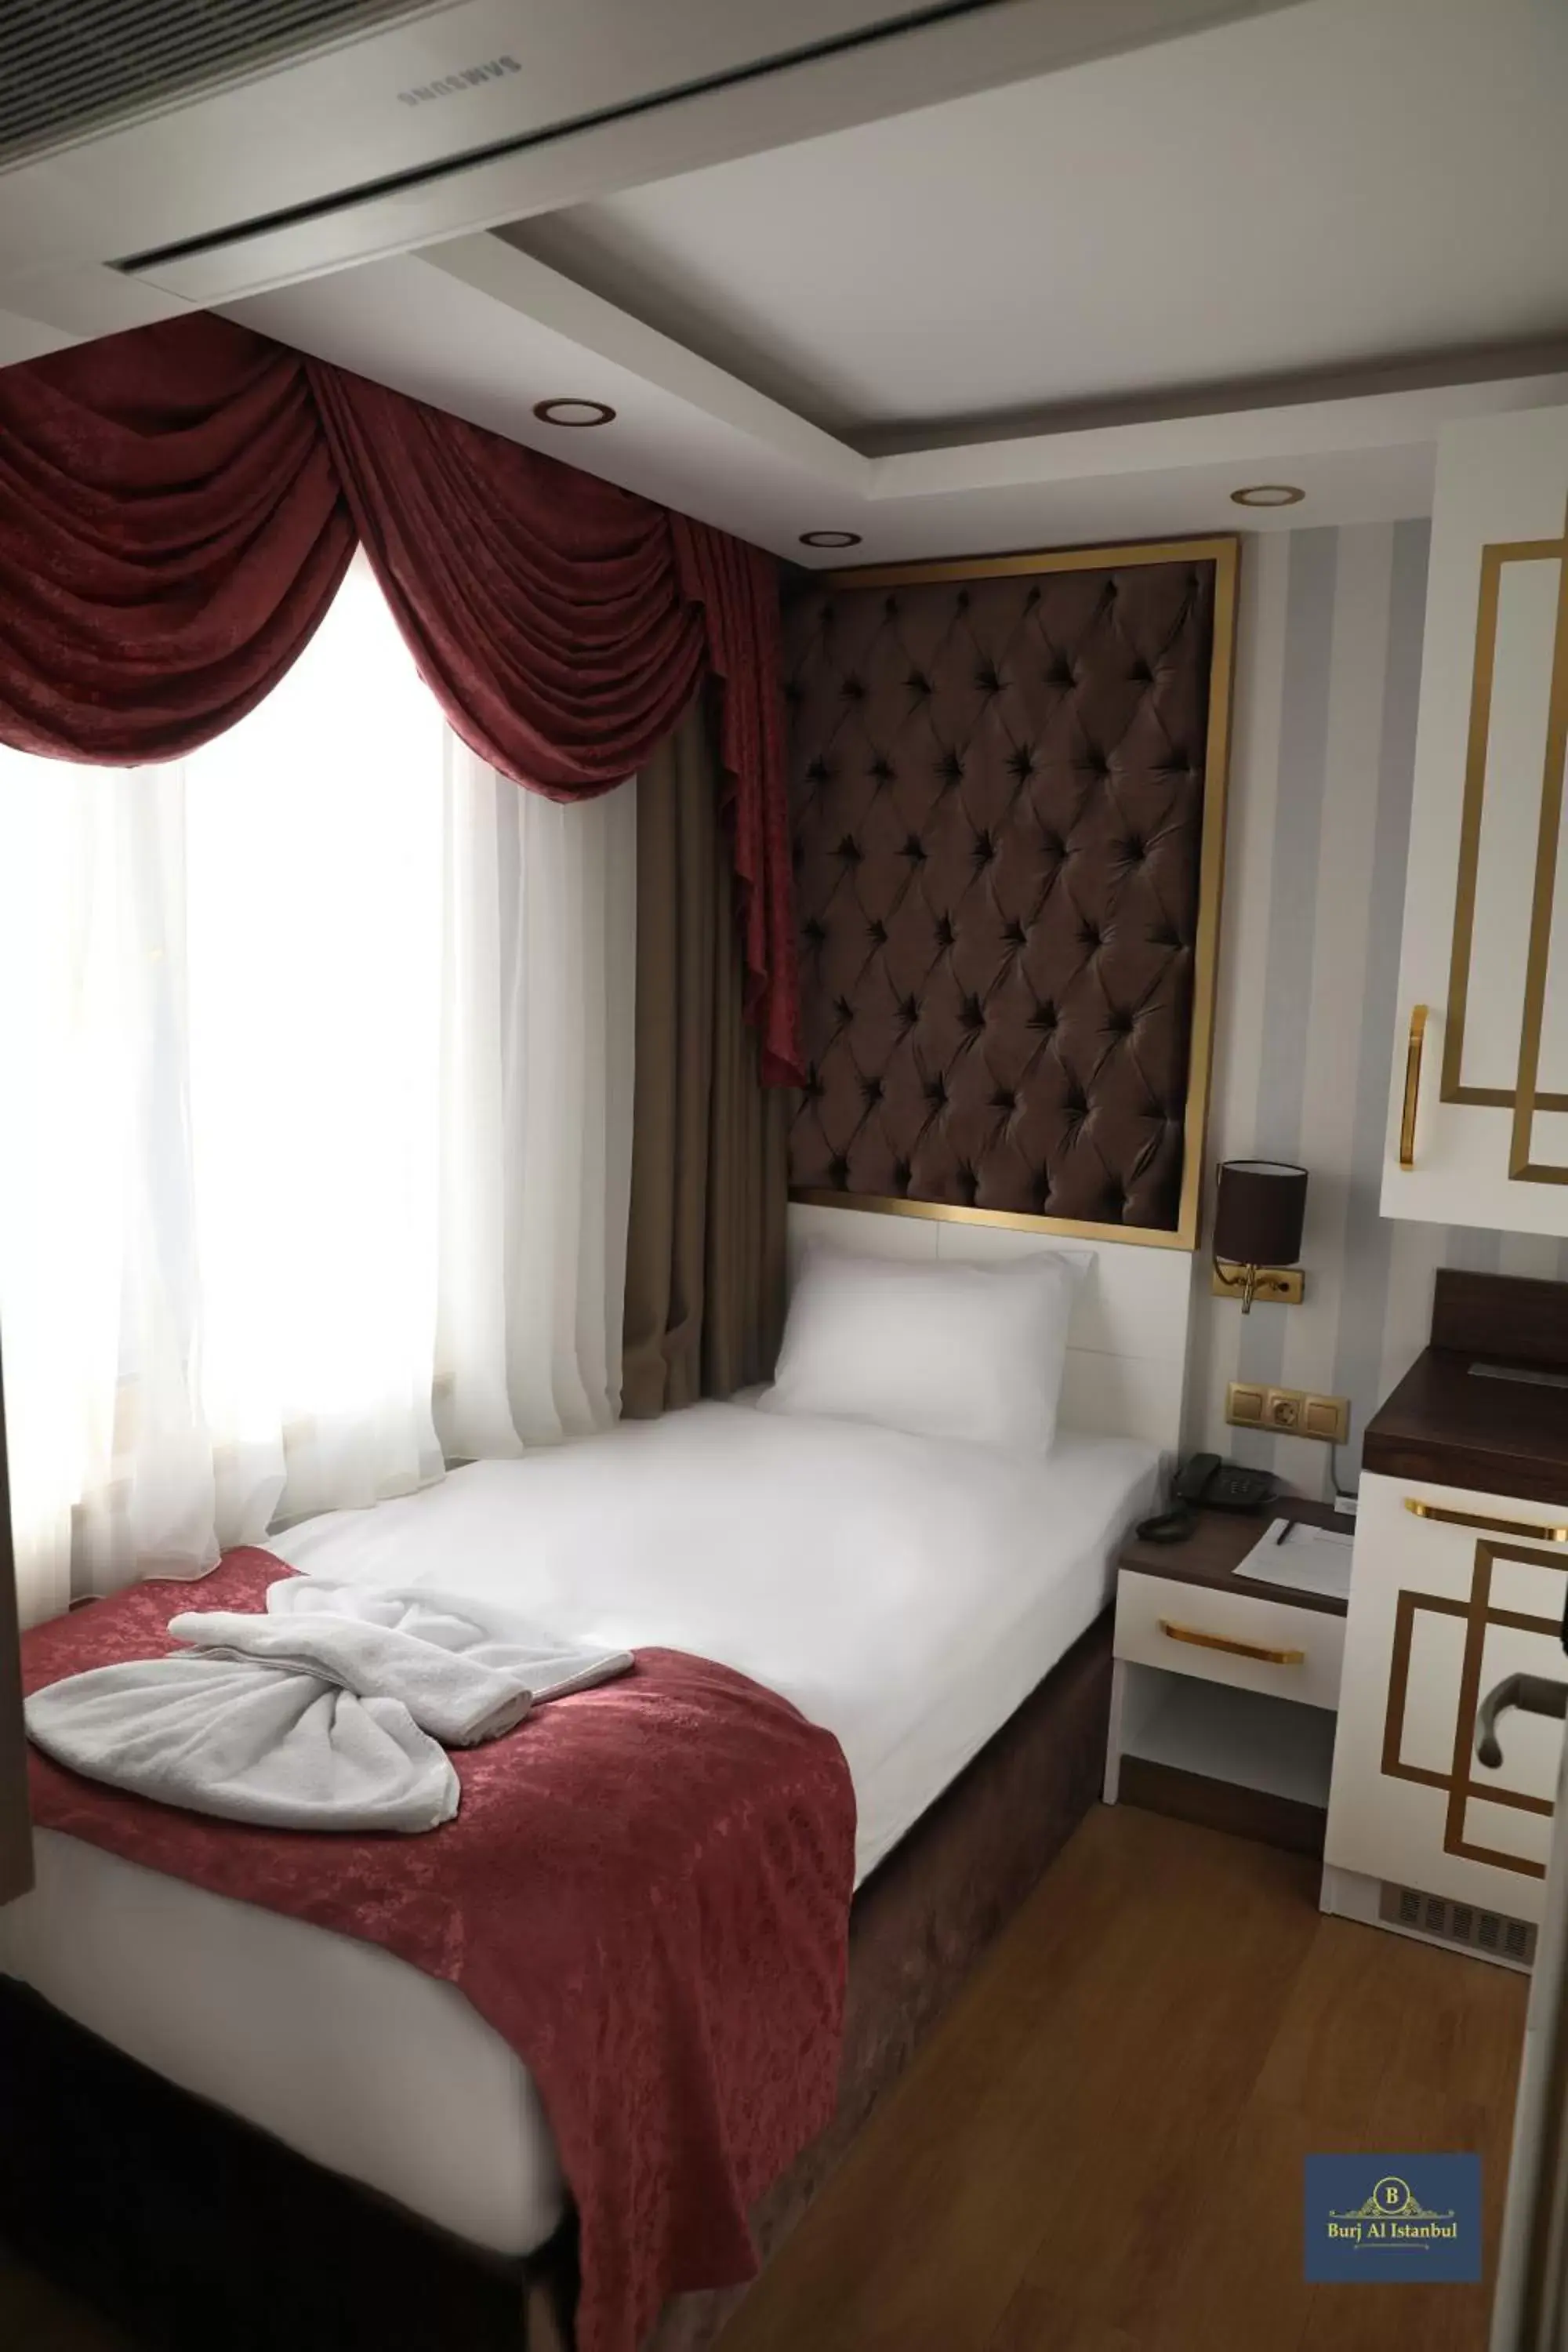 Bed in Burj Al Istanbul